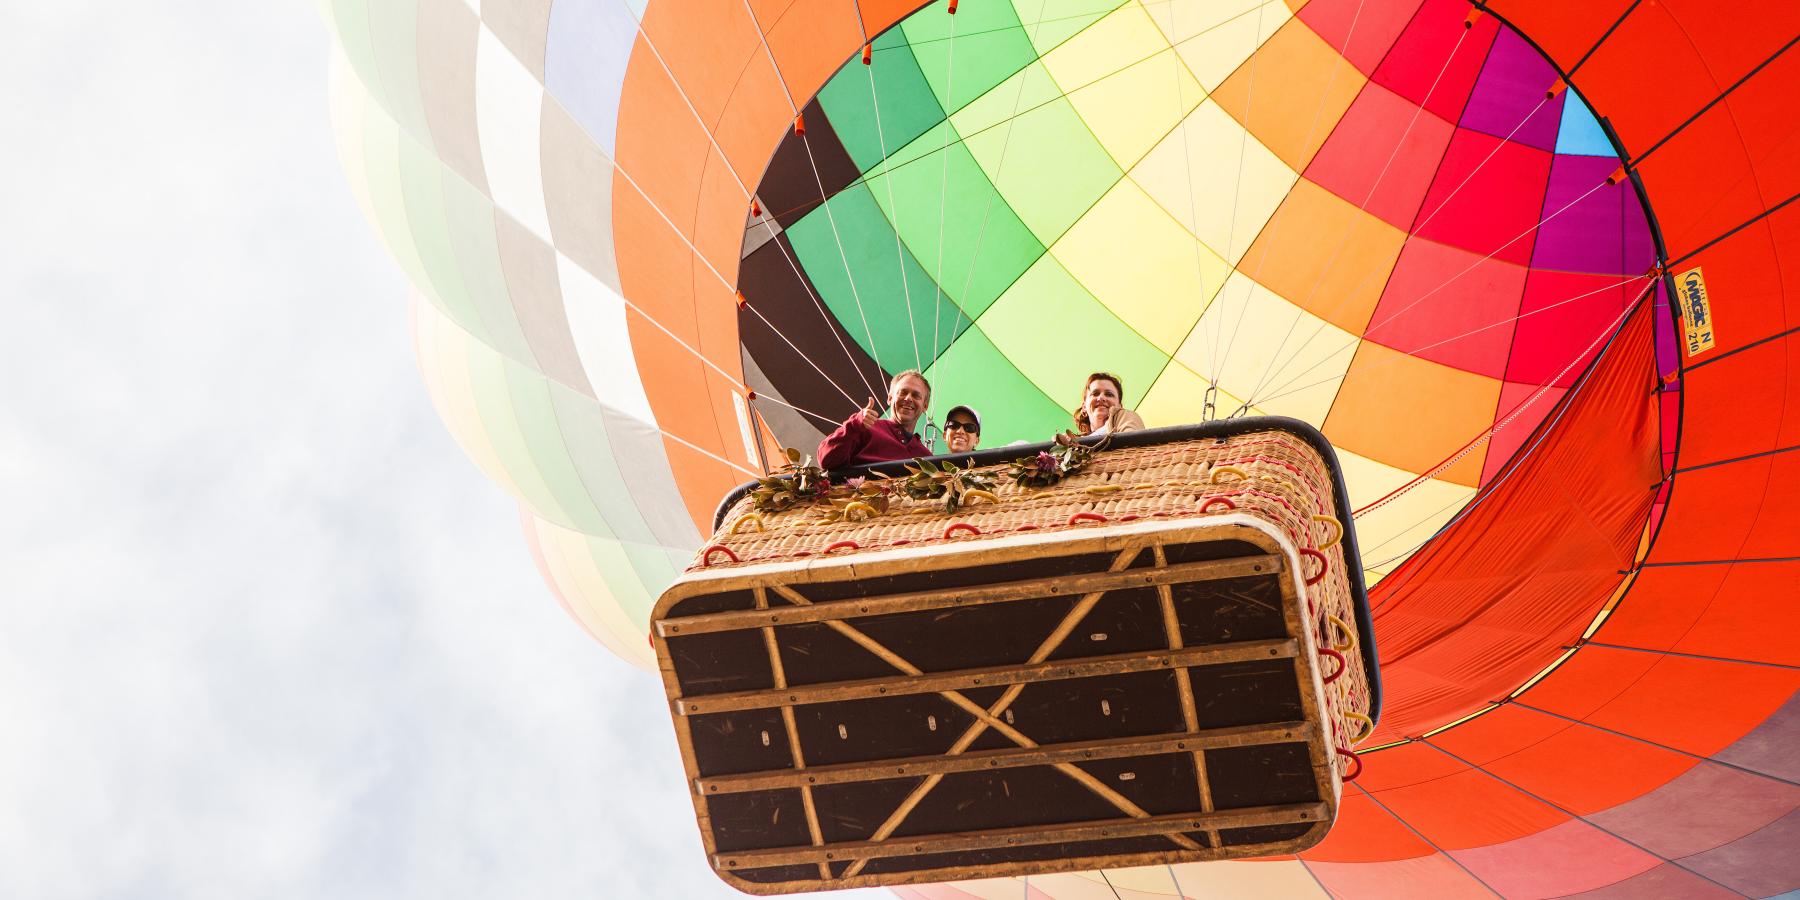 Balloon flight - Aviation, History, Adventure